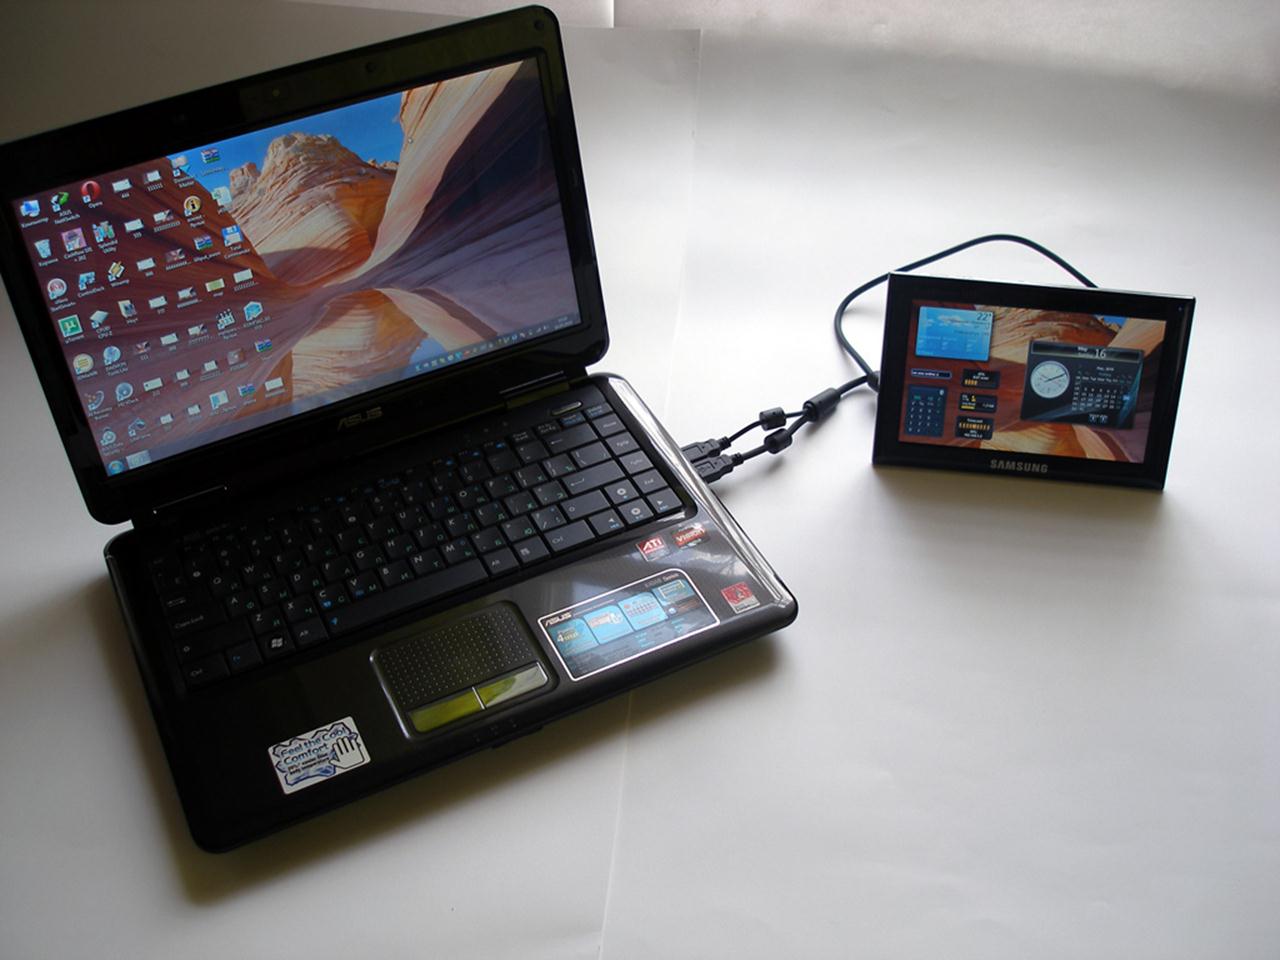 Ładowanie USB wymaga więcej   długi czas   niż po podłączeniu tabletu do gniazdka